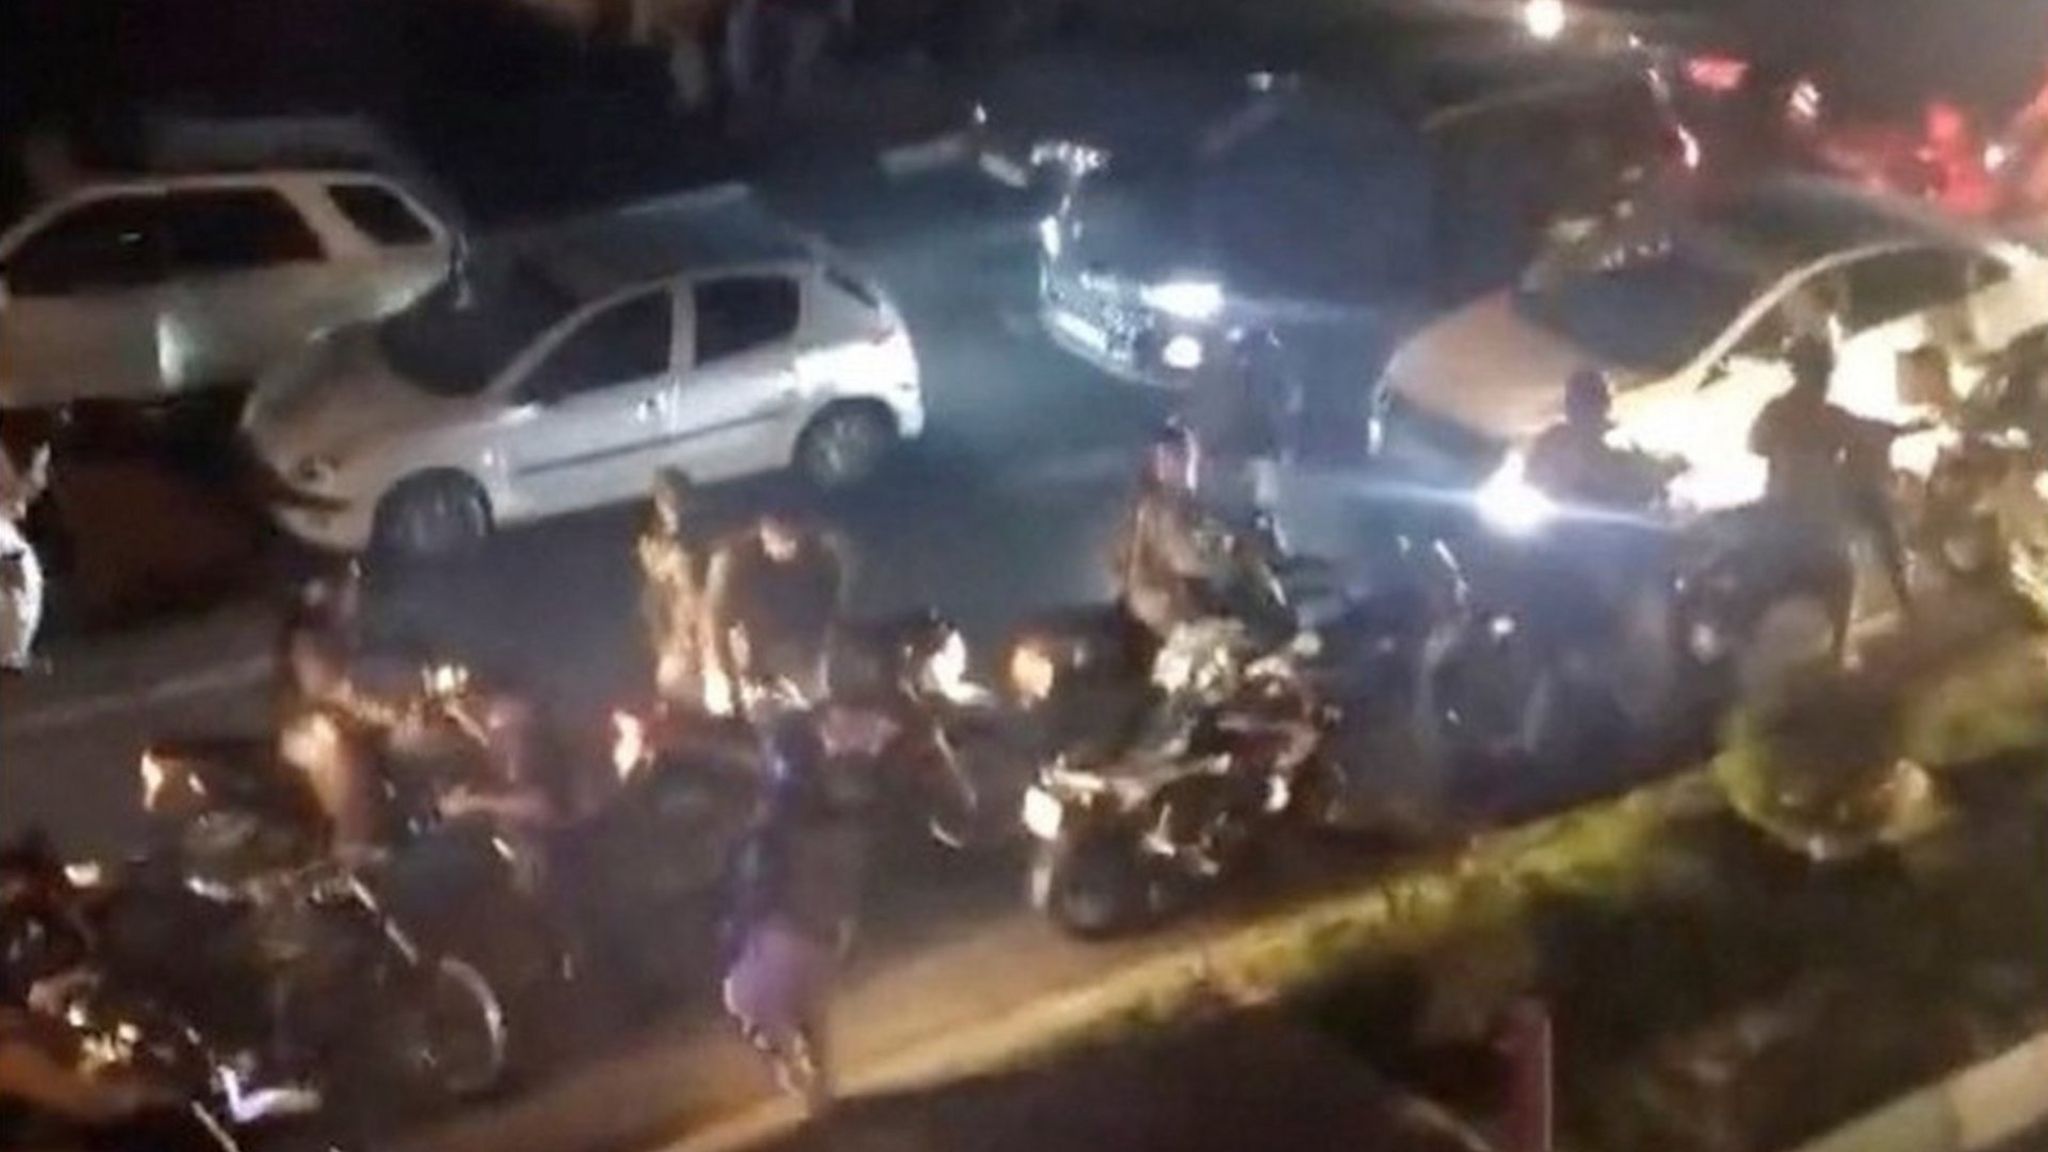 Скриншот видео, на котором люди бегут во время столкновений между ОМОНом и студентами в Тегеране, Иран (2 октября 2022)